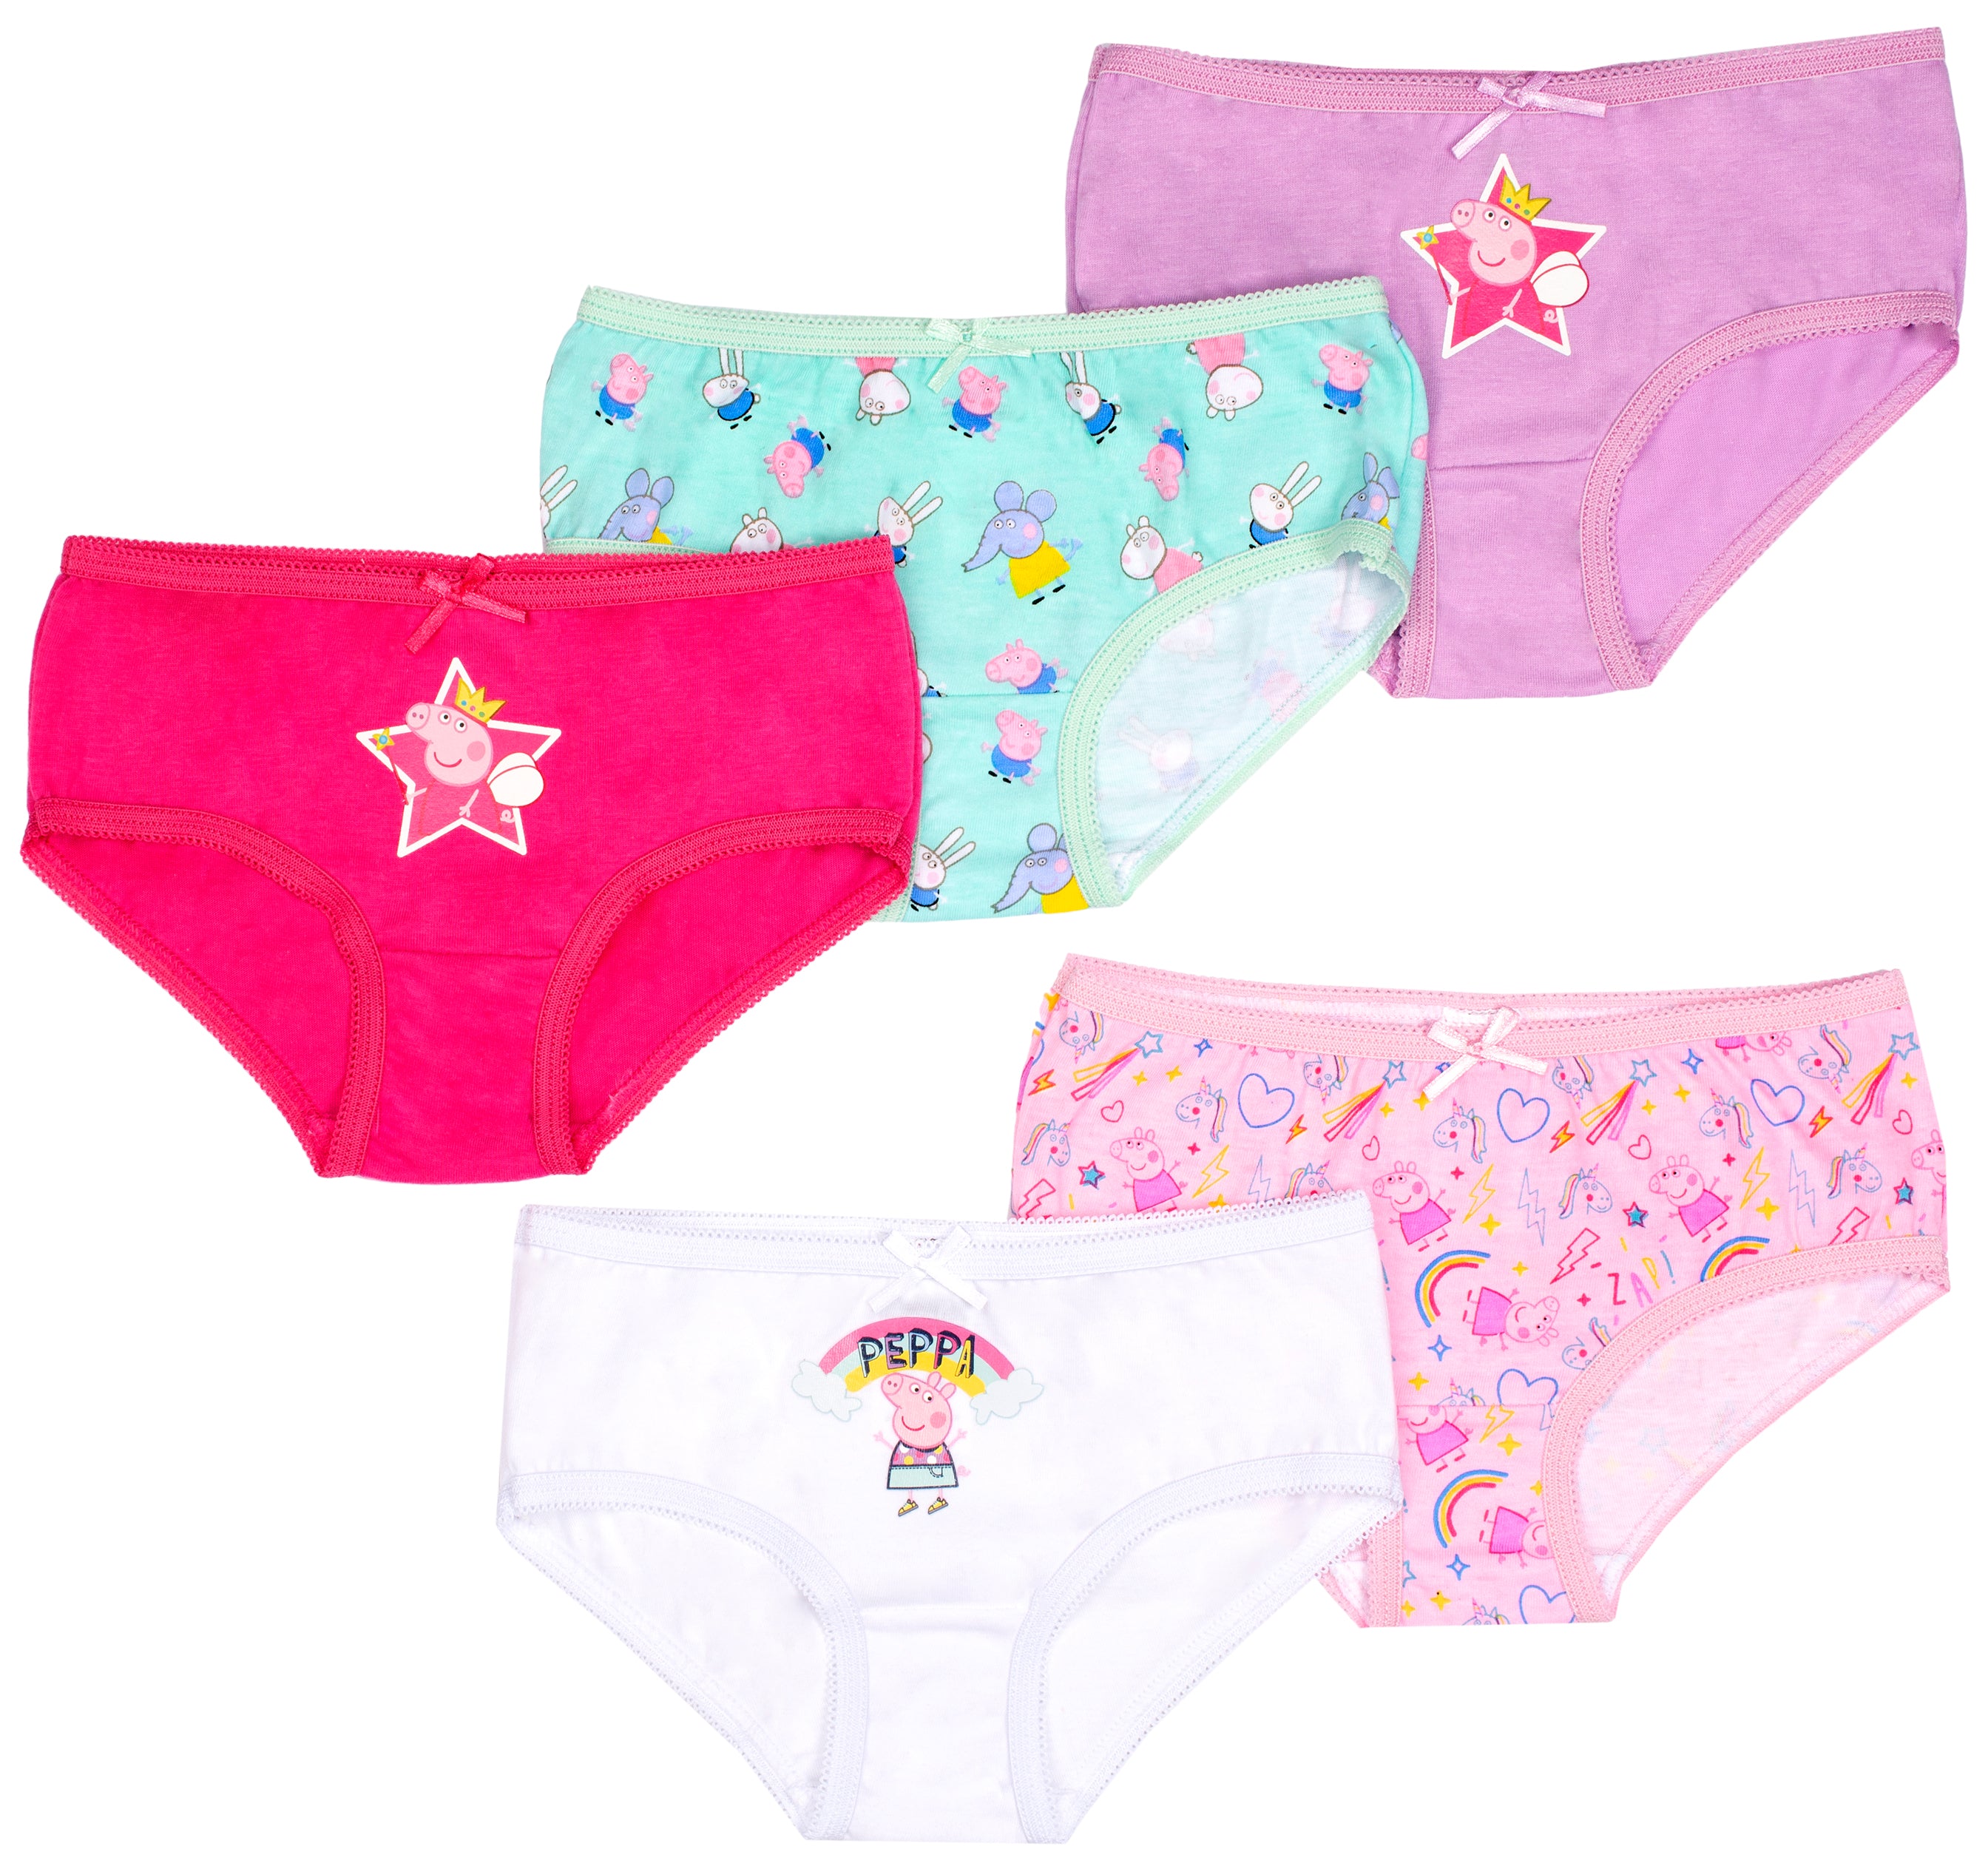  Girls' Underwear - Peppa Pig / Girls' Underwear